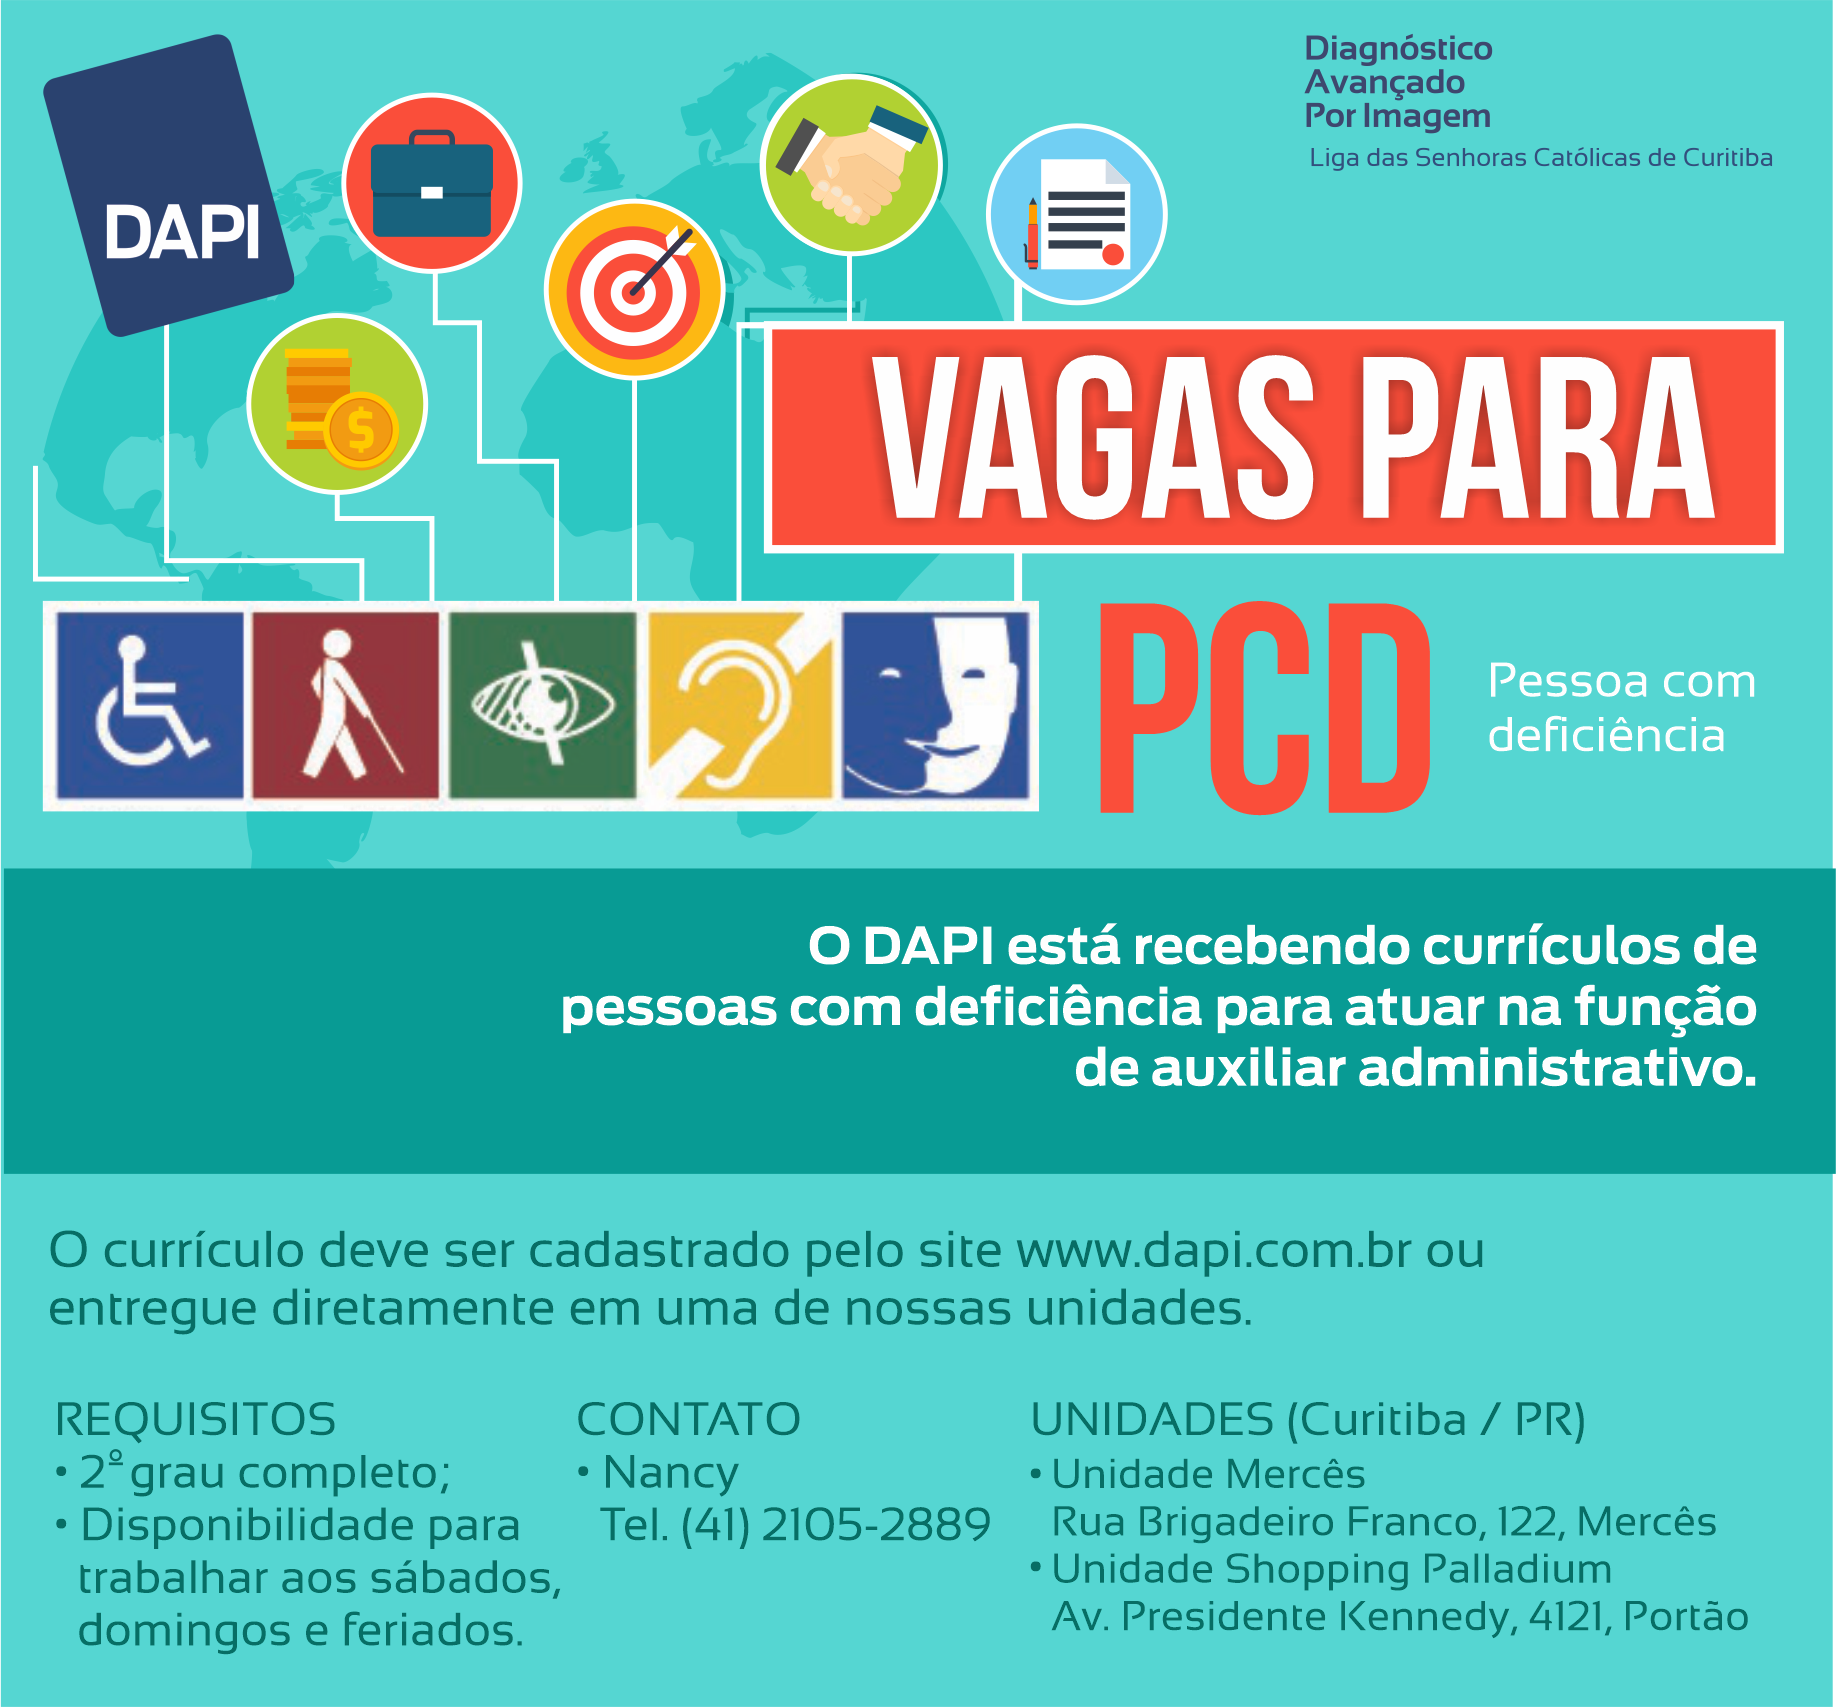 Trabalhe Conosco Dapi Diagnóstico Avançado Por Imagem Em Curitiba 7591